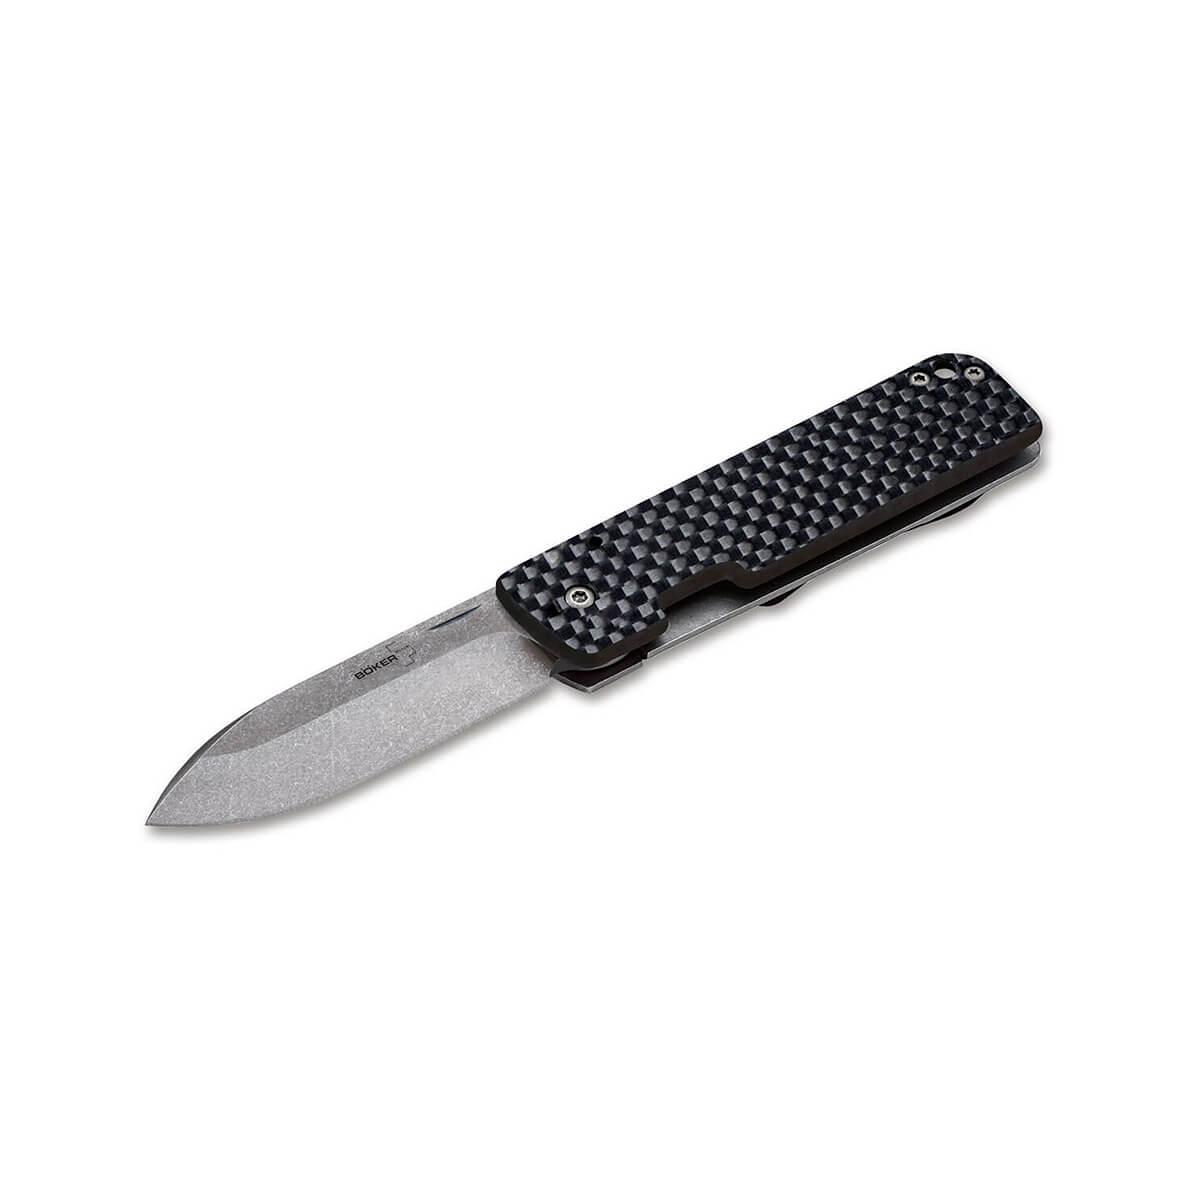  Lancer 42 Carbon Knife